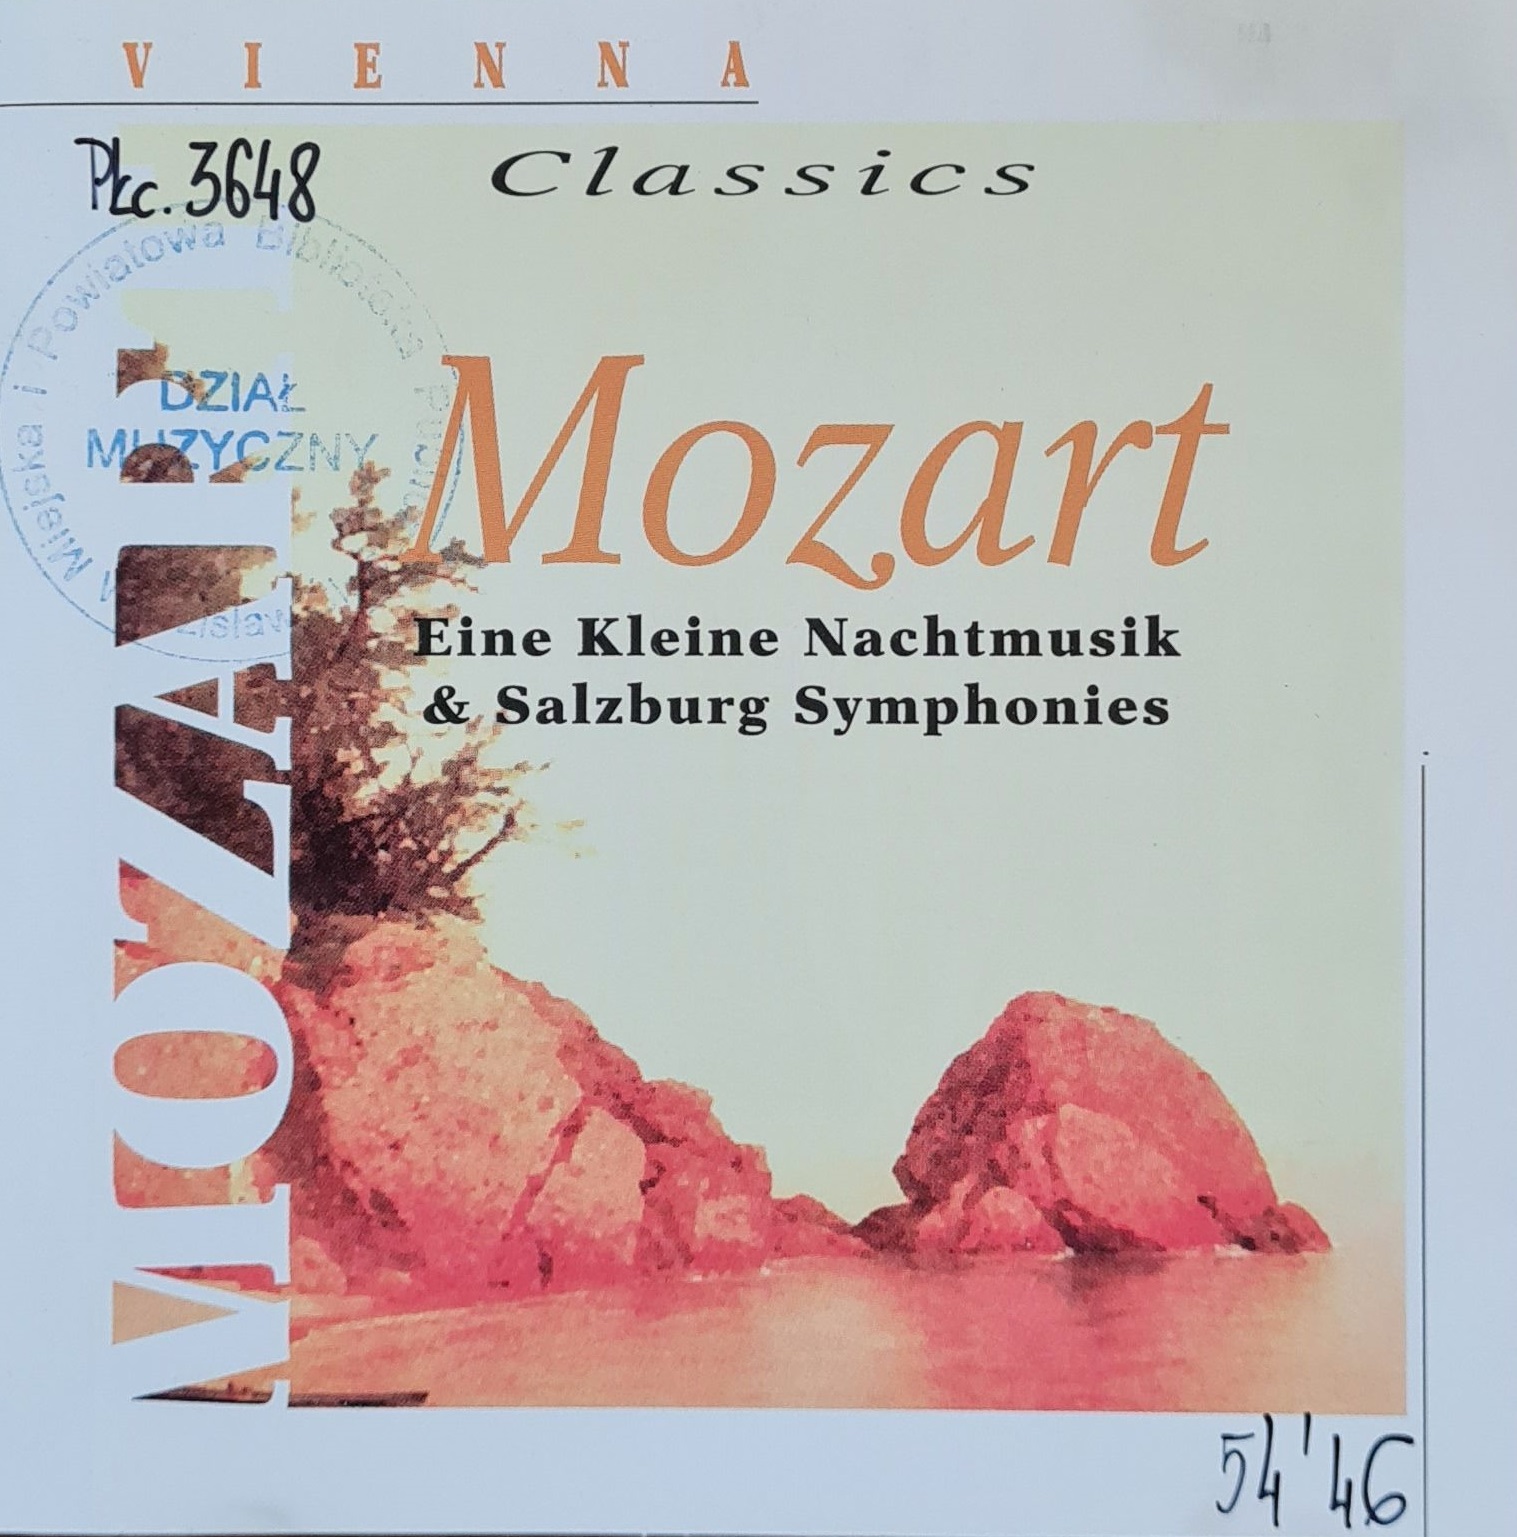 Mozart - Eine Kleine Nachtmusik And Salzburg Symphonies